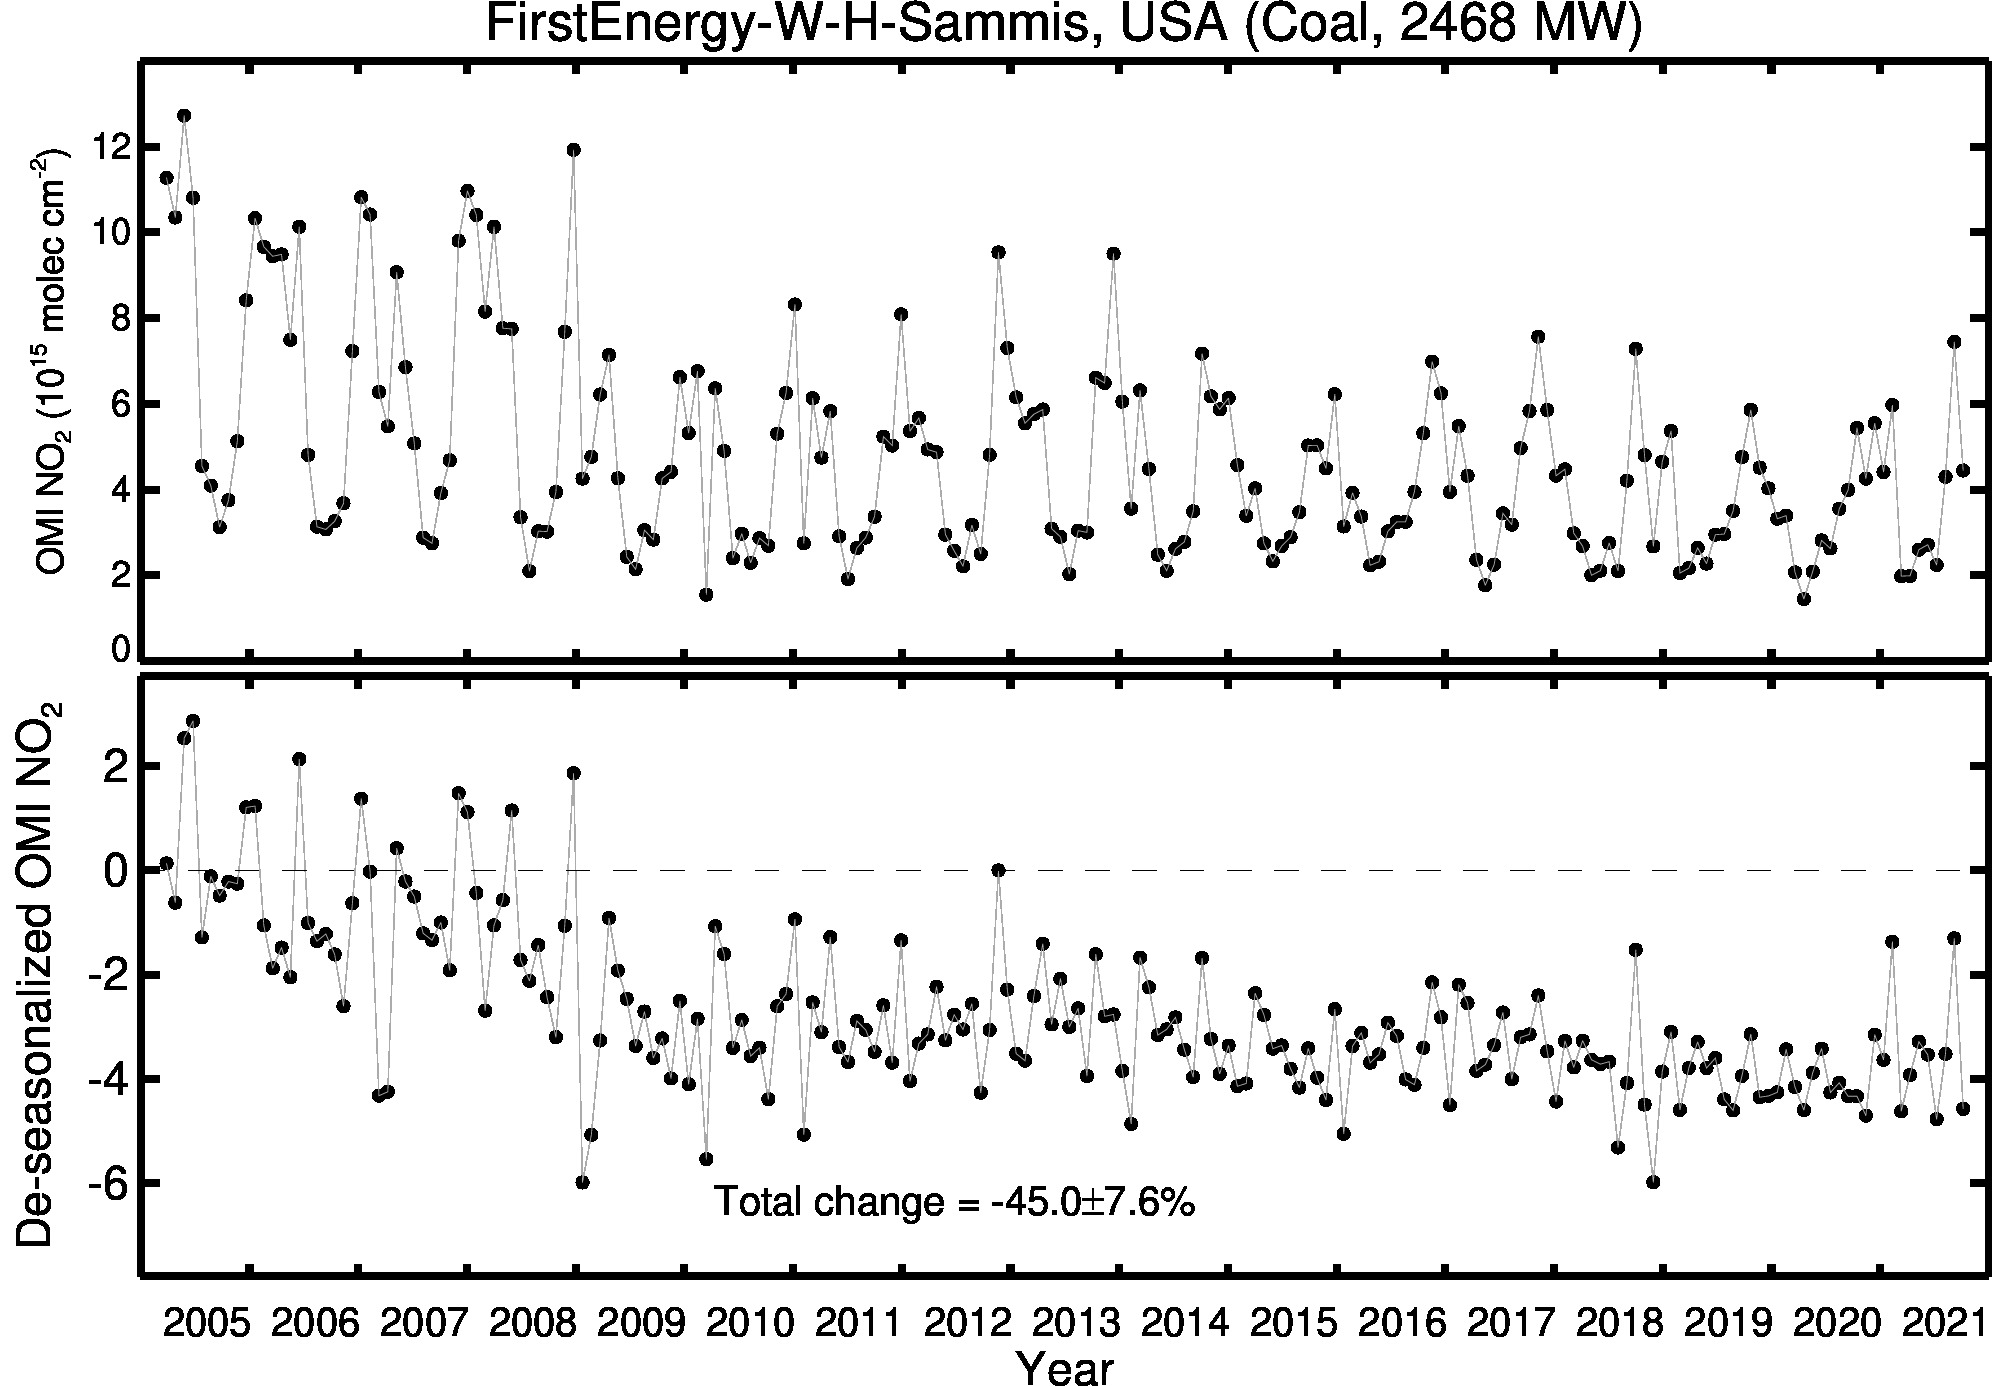 FirstEnergy W H Sammis Line Plot 2005-2021